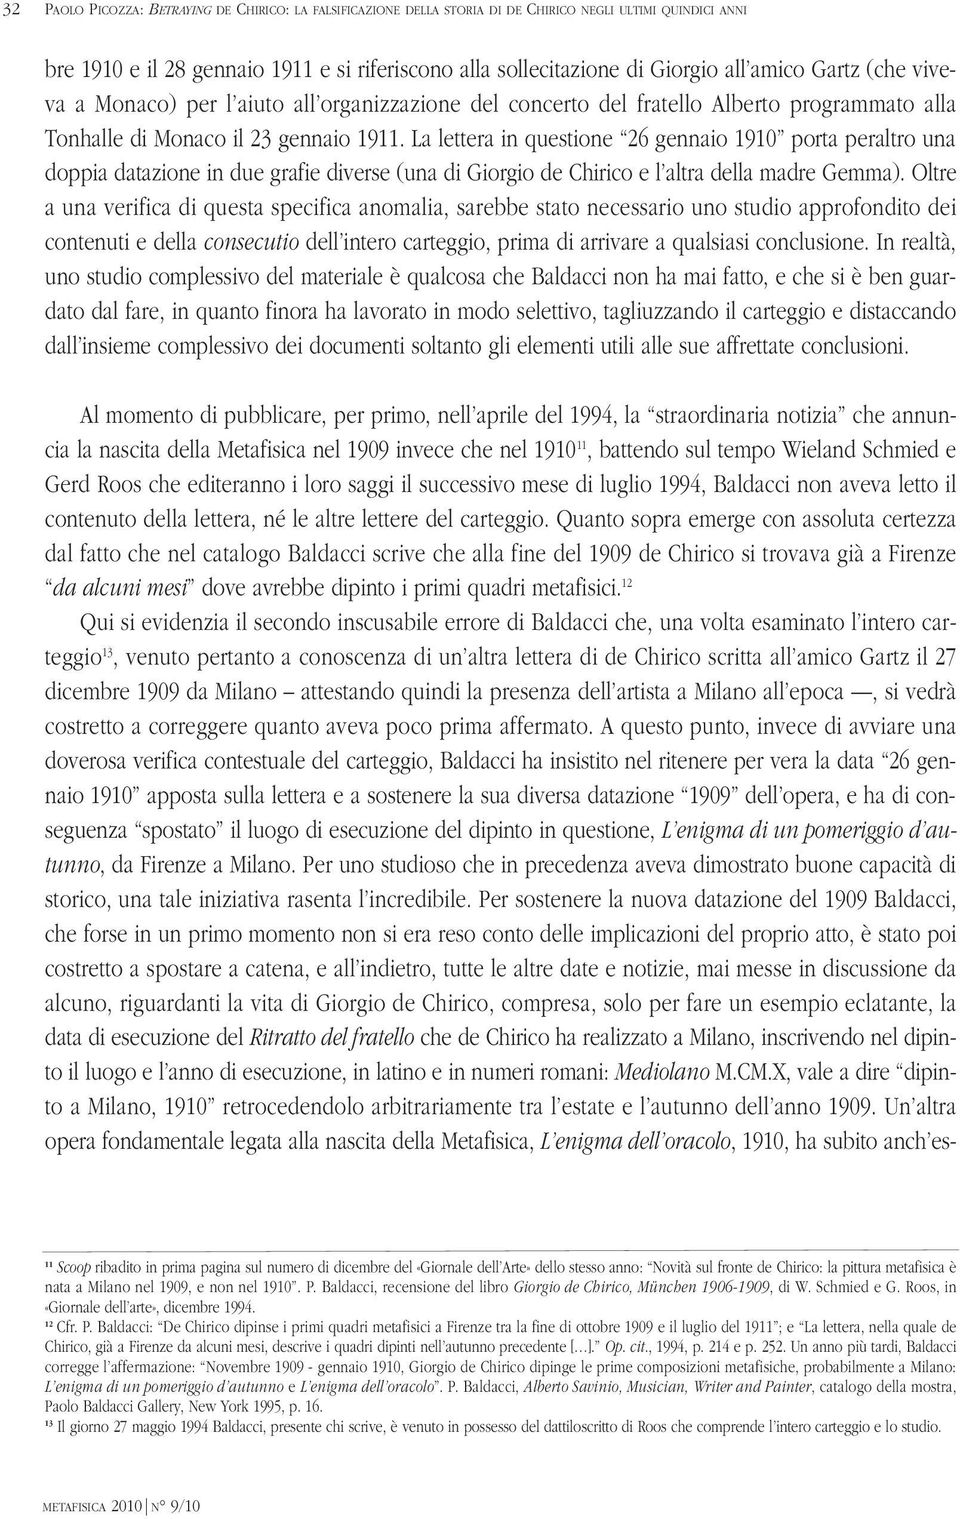 La lettera in questione 26 gennaio 1910 porta peraltro una doppia datazione in due grafie diverse (una di Giorgio de Chirico e l altra della madre Gemma).